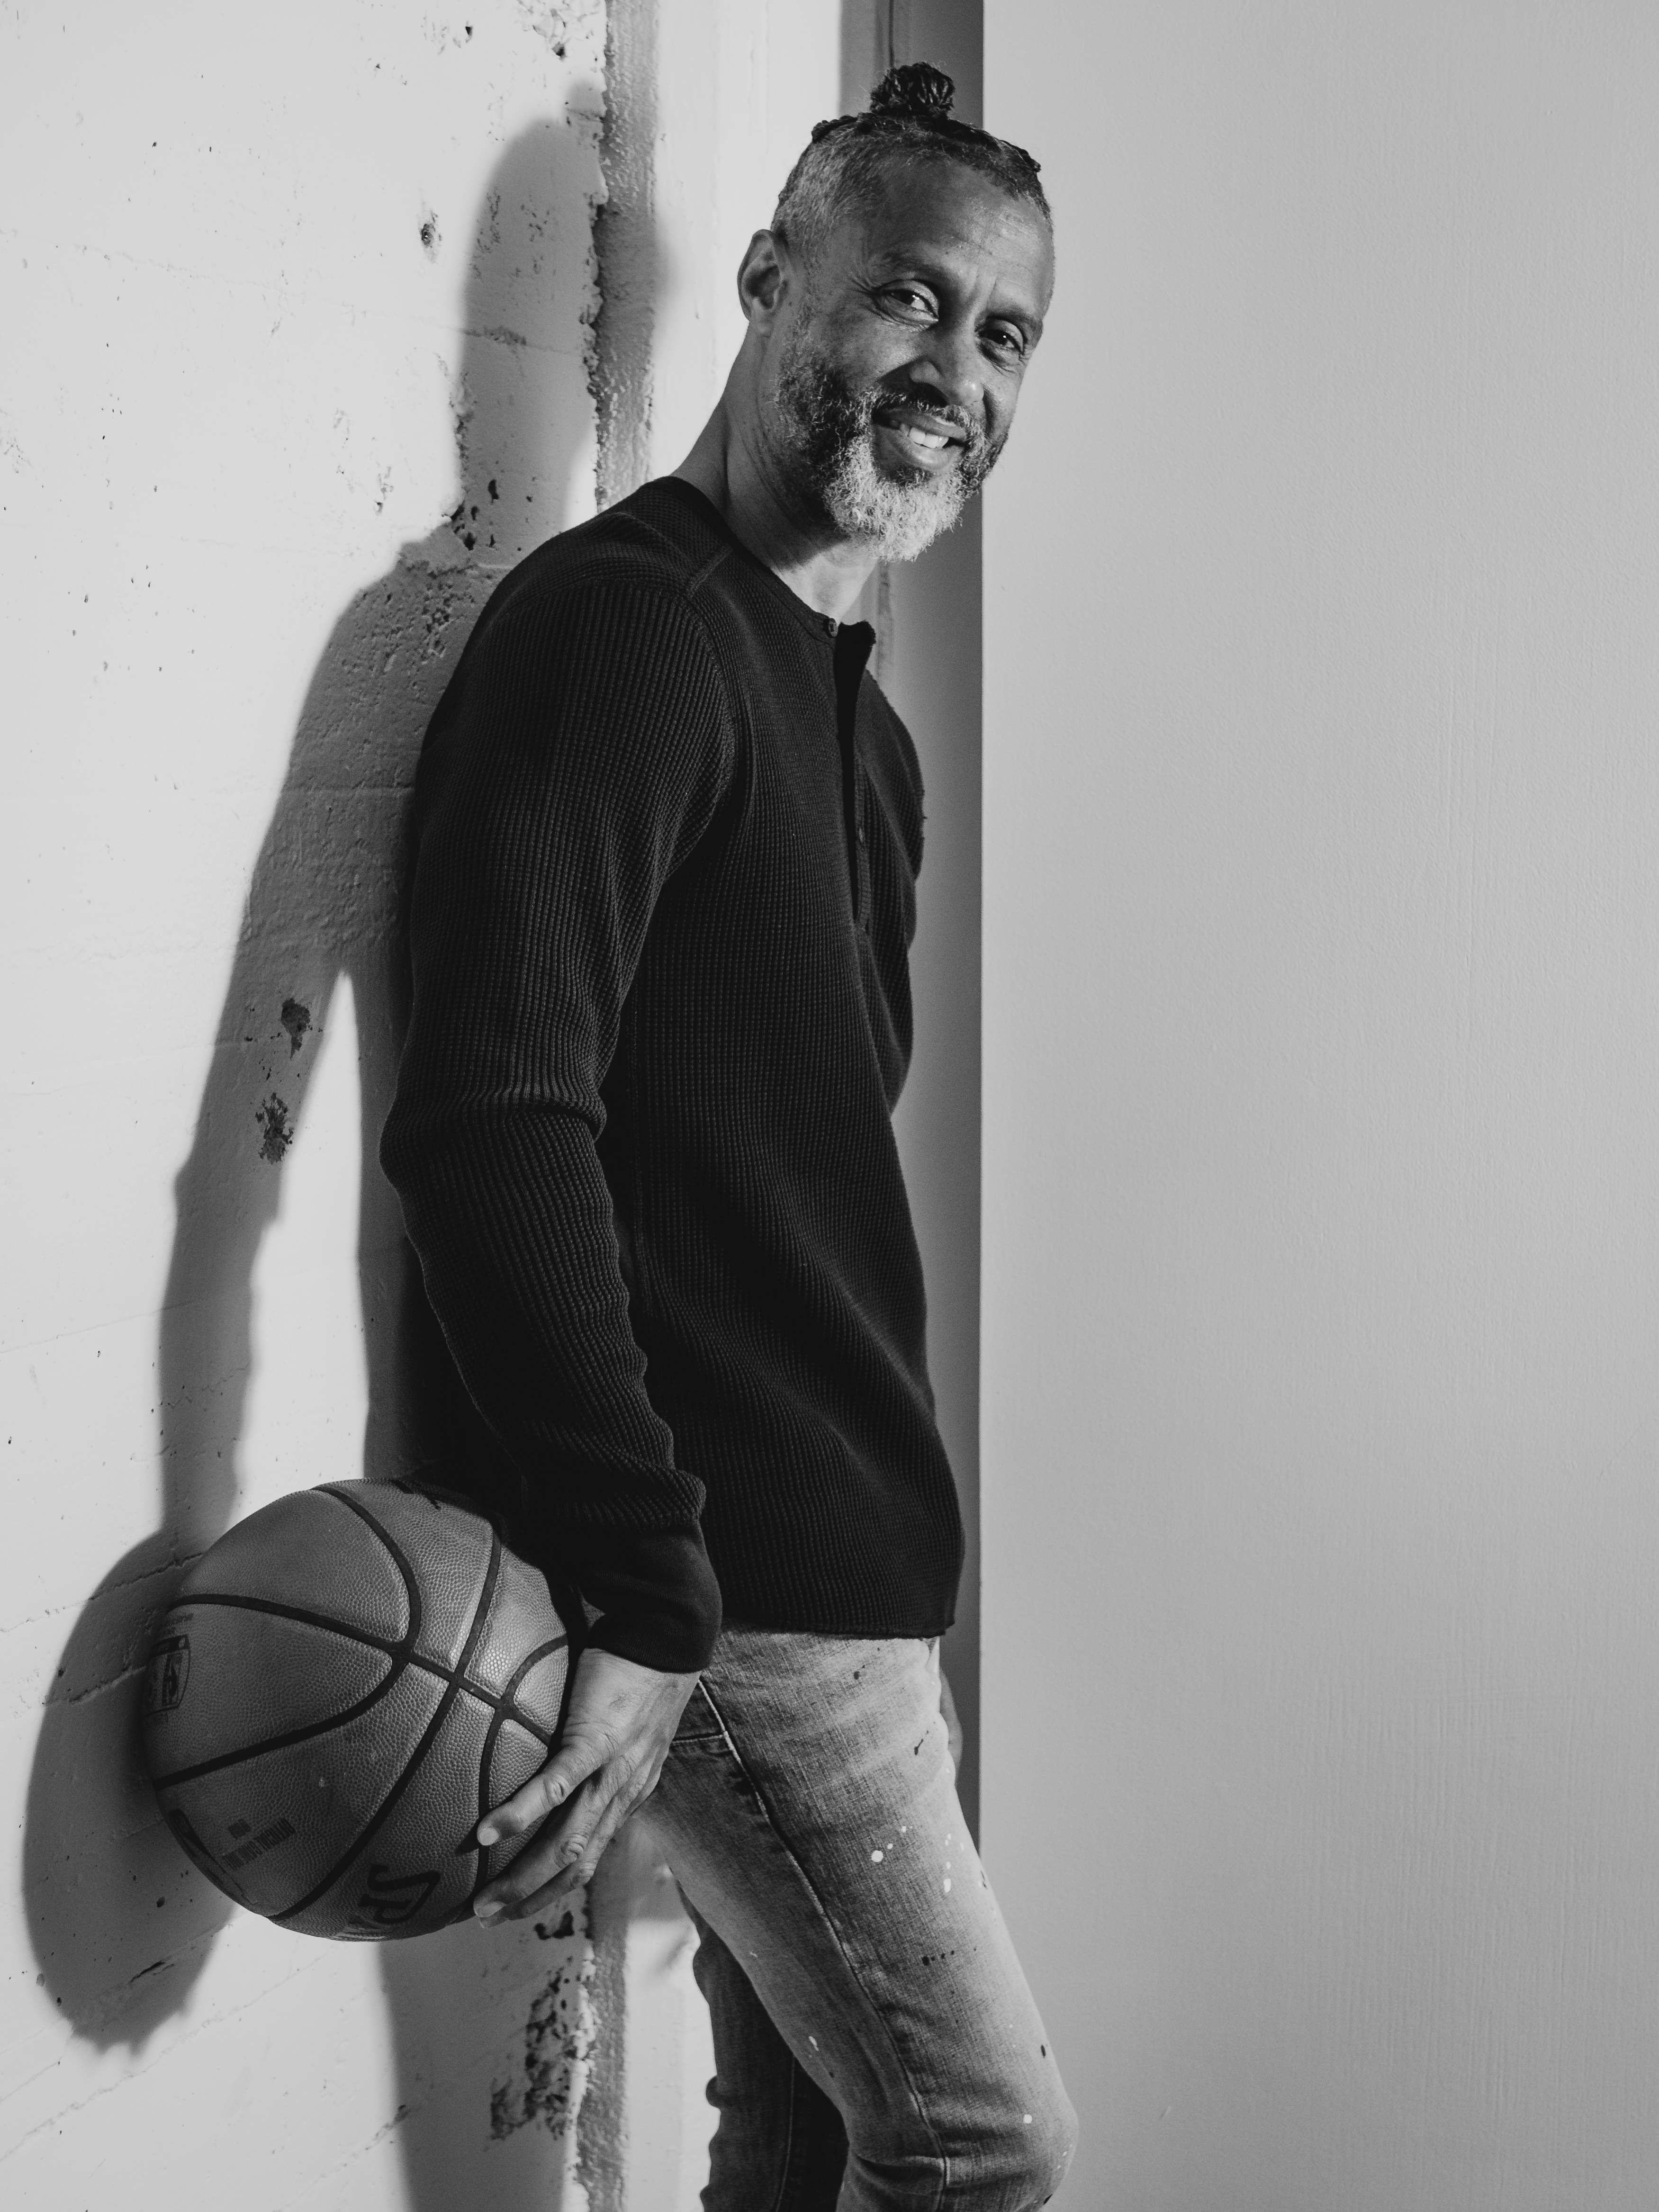 Mahmoud Abdul-Rauf Reflects on Faith and Basketball - The Observer